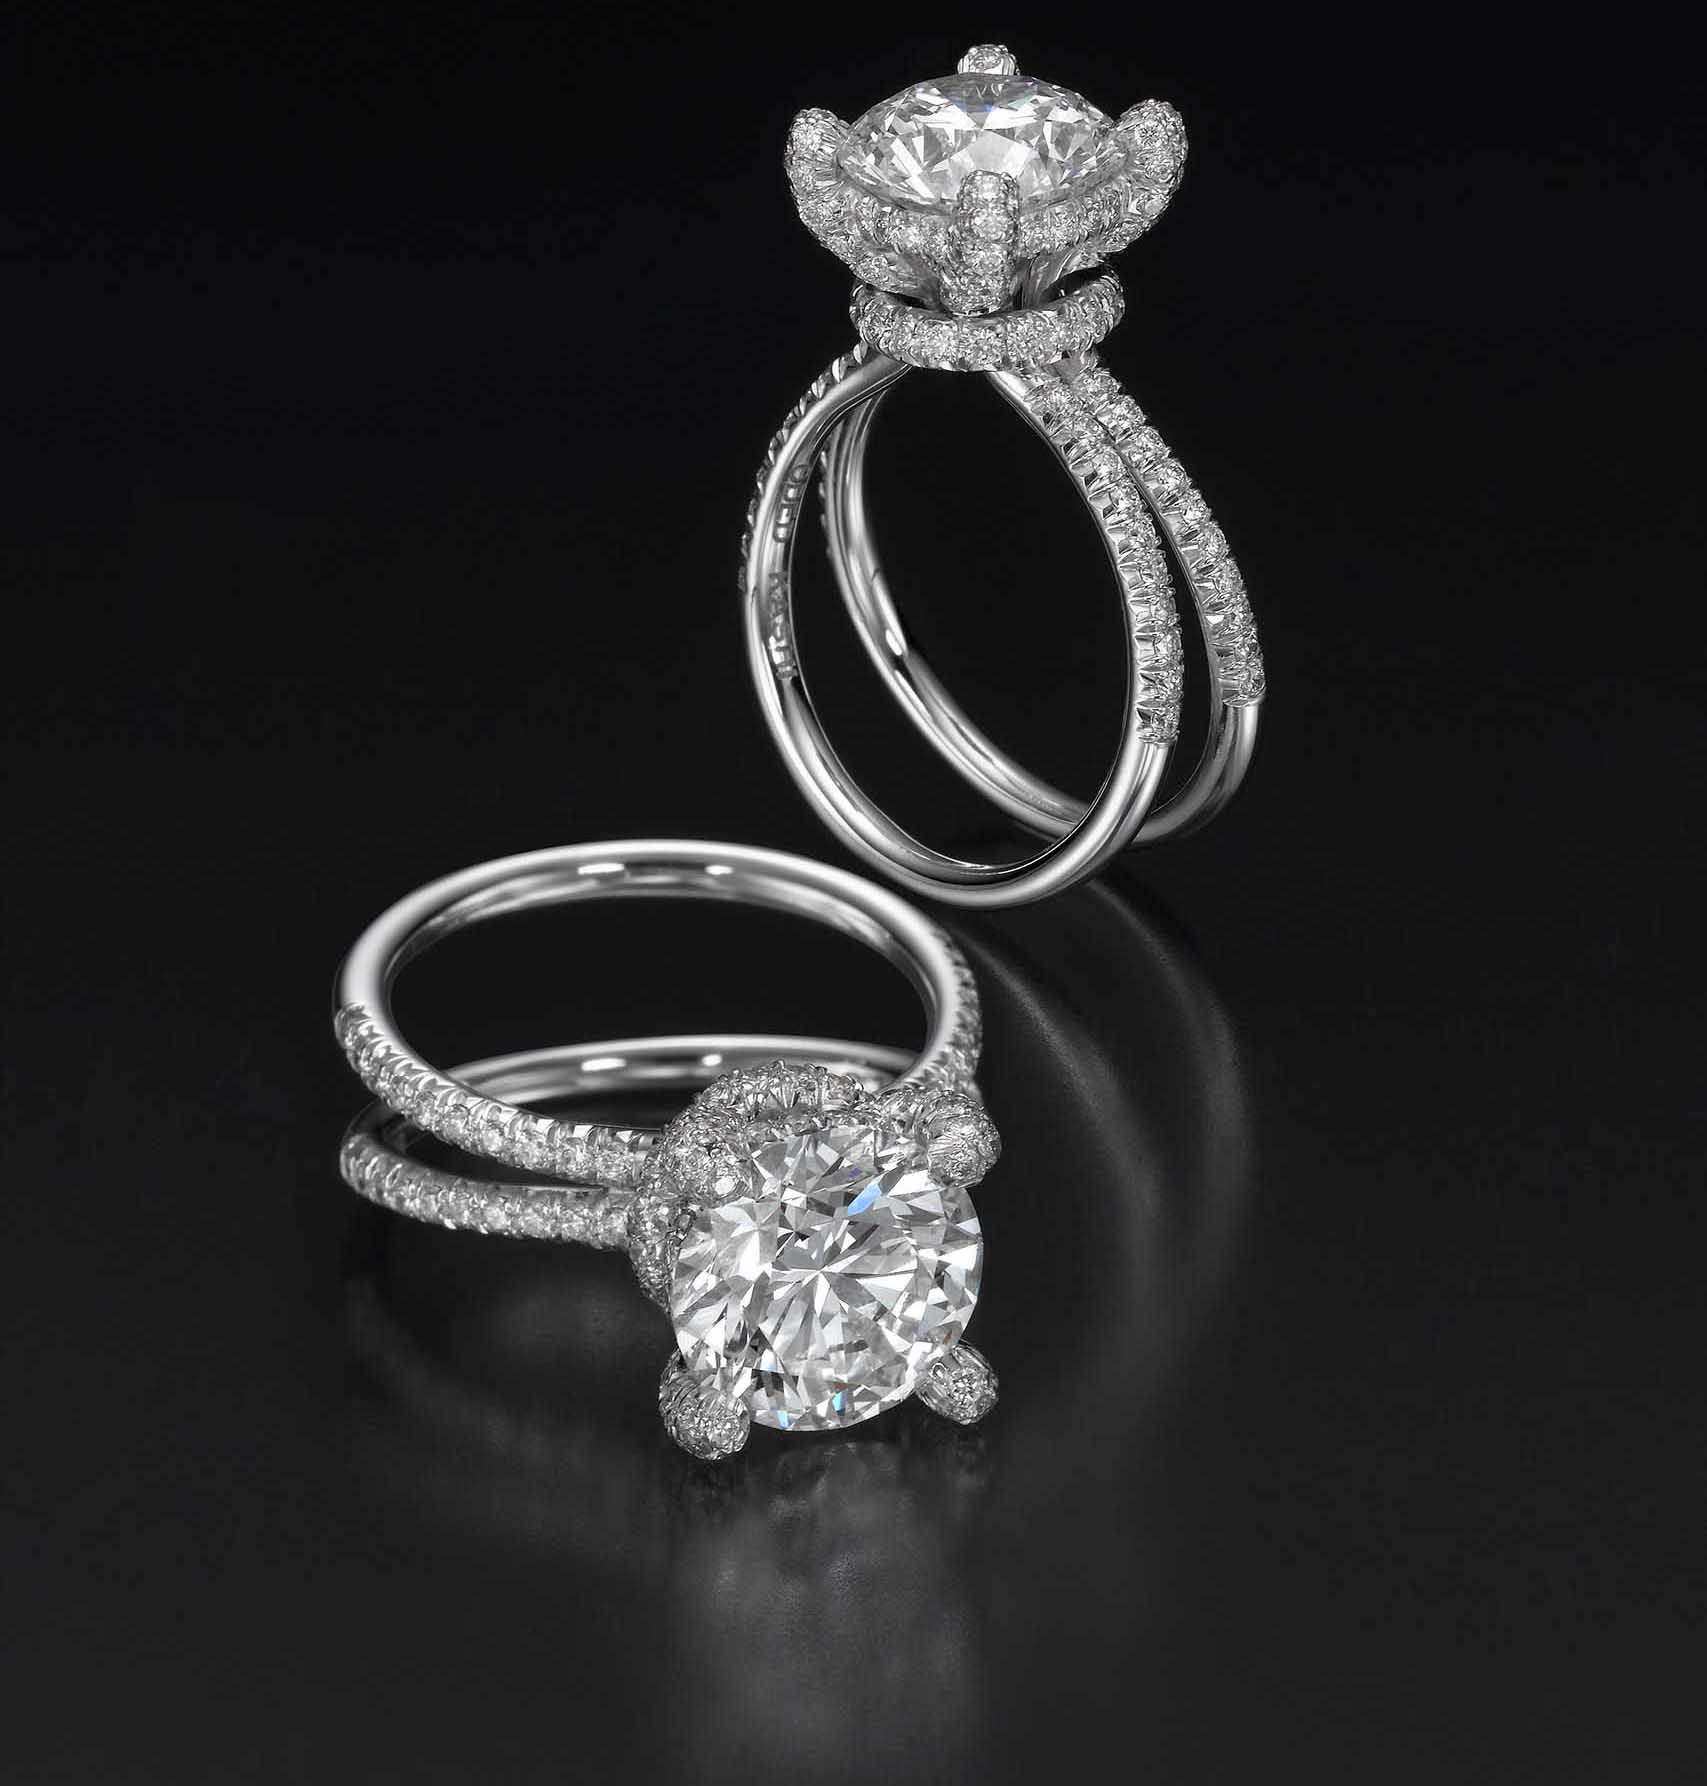 תכשיטים, טבעת אירוסין, עודד קאשי, מגזין אופנה 2020 -